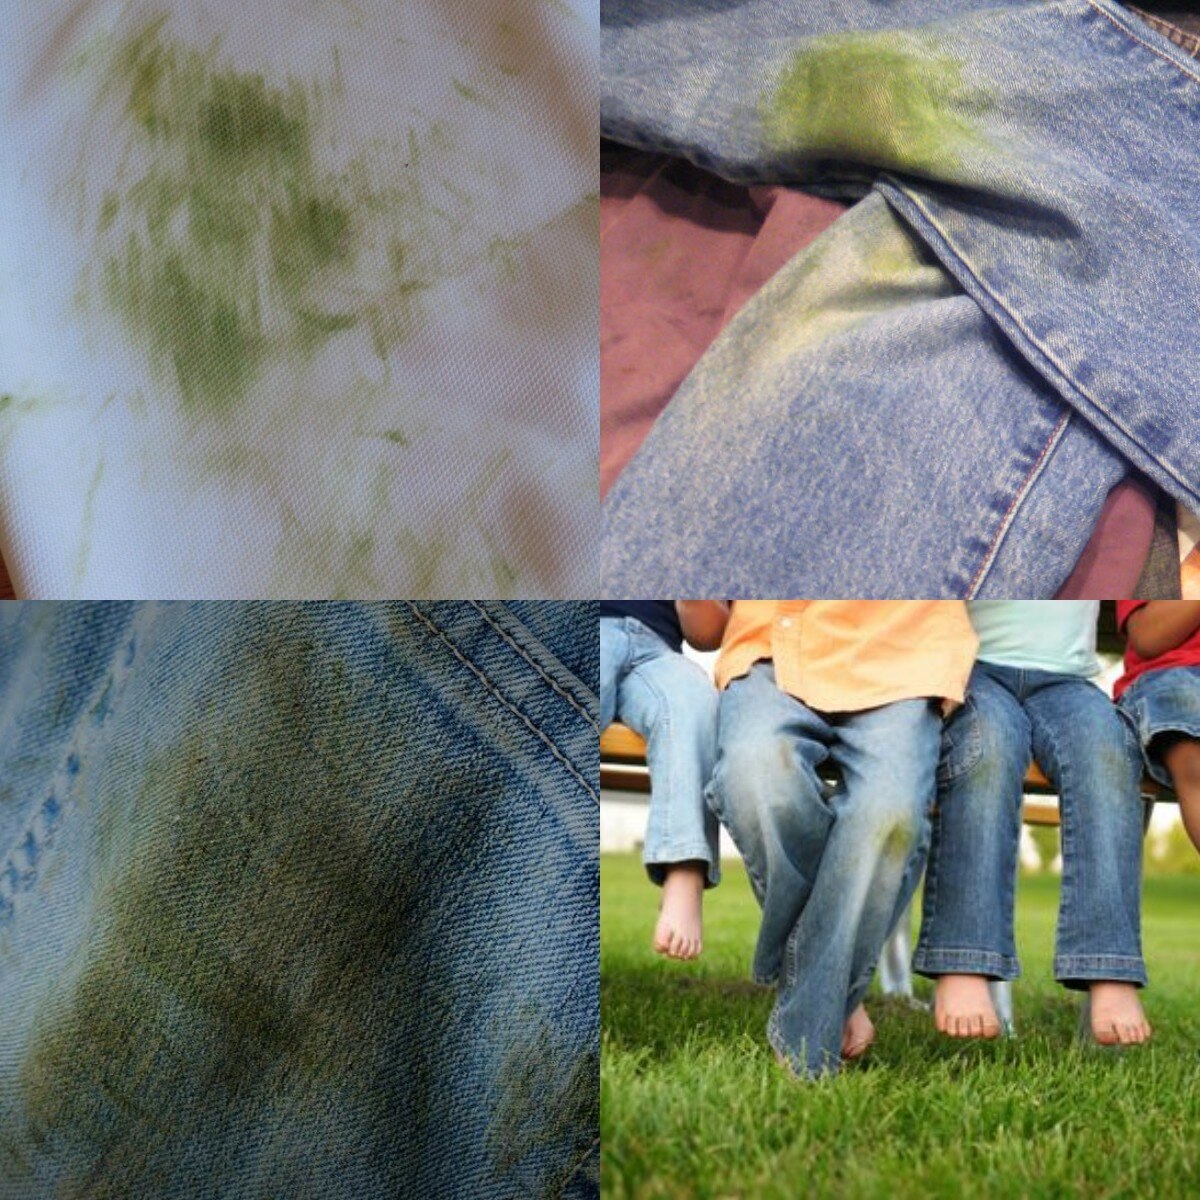 Пятна от травы. Пятна от травы на джинсах. Пятна от травы на одежде. Джинсы в траве испачканные.